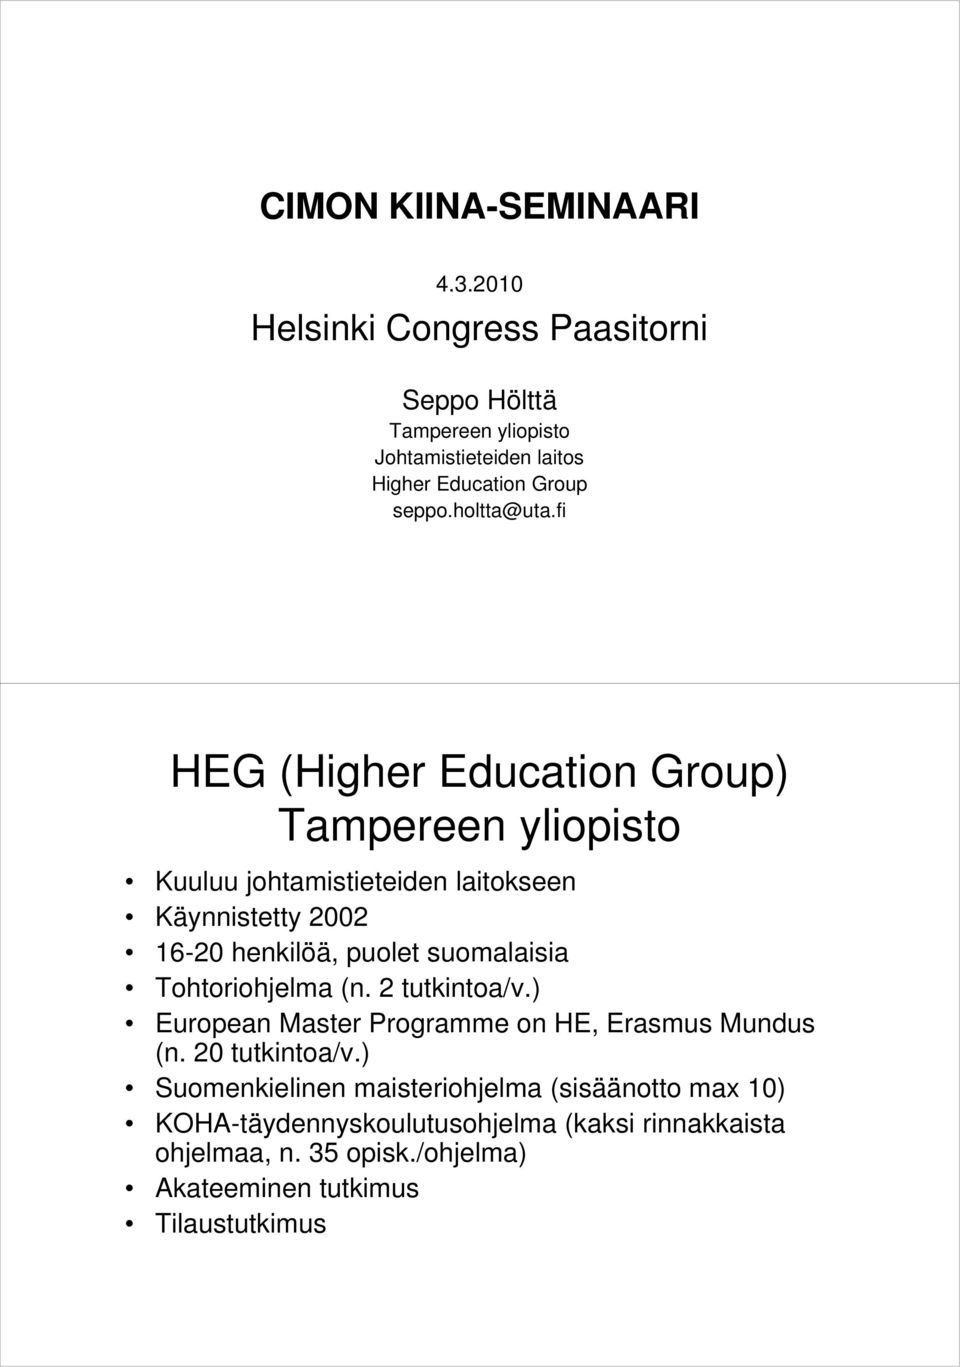 fi HEG (Higher Education Group) Tampereen yliopisto Kuuluu johtamistieteiden laitokseen Käynnistetty 2002 16-20 henkilöä, puolet suomalaisia